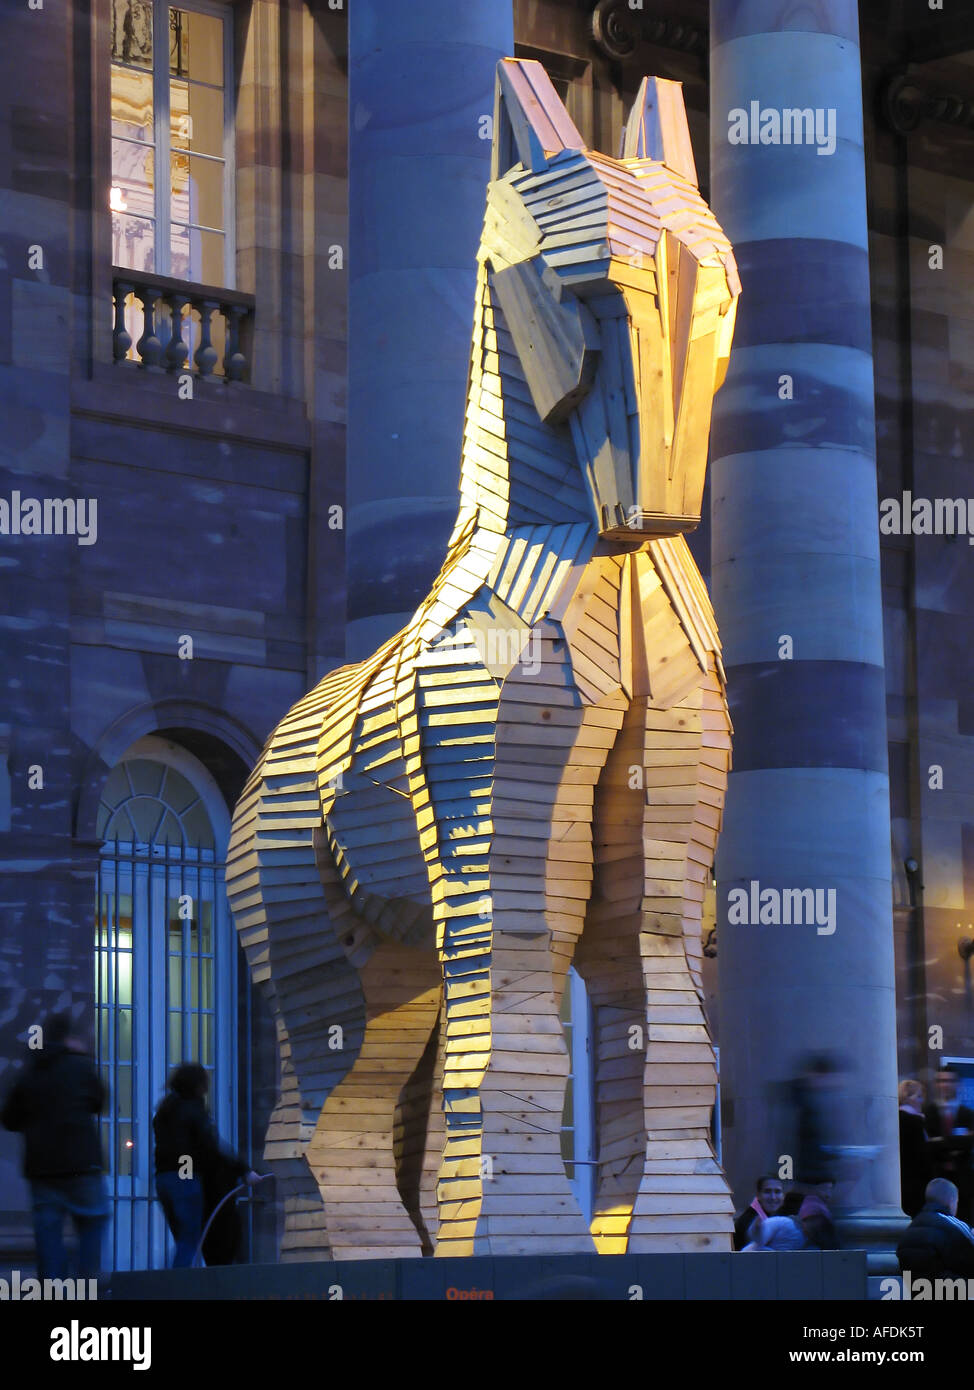 Cheval de Troie en bois par Philippe Miesch en face de l'Opera House de nuit, Strasbourg, Alsace, France, Europe Banque D'Images